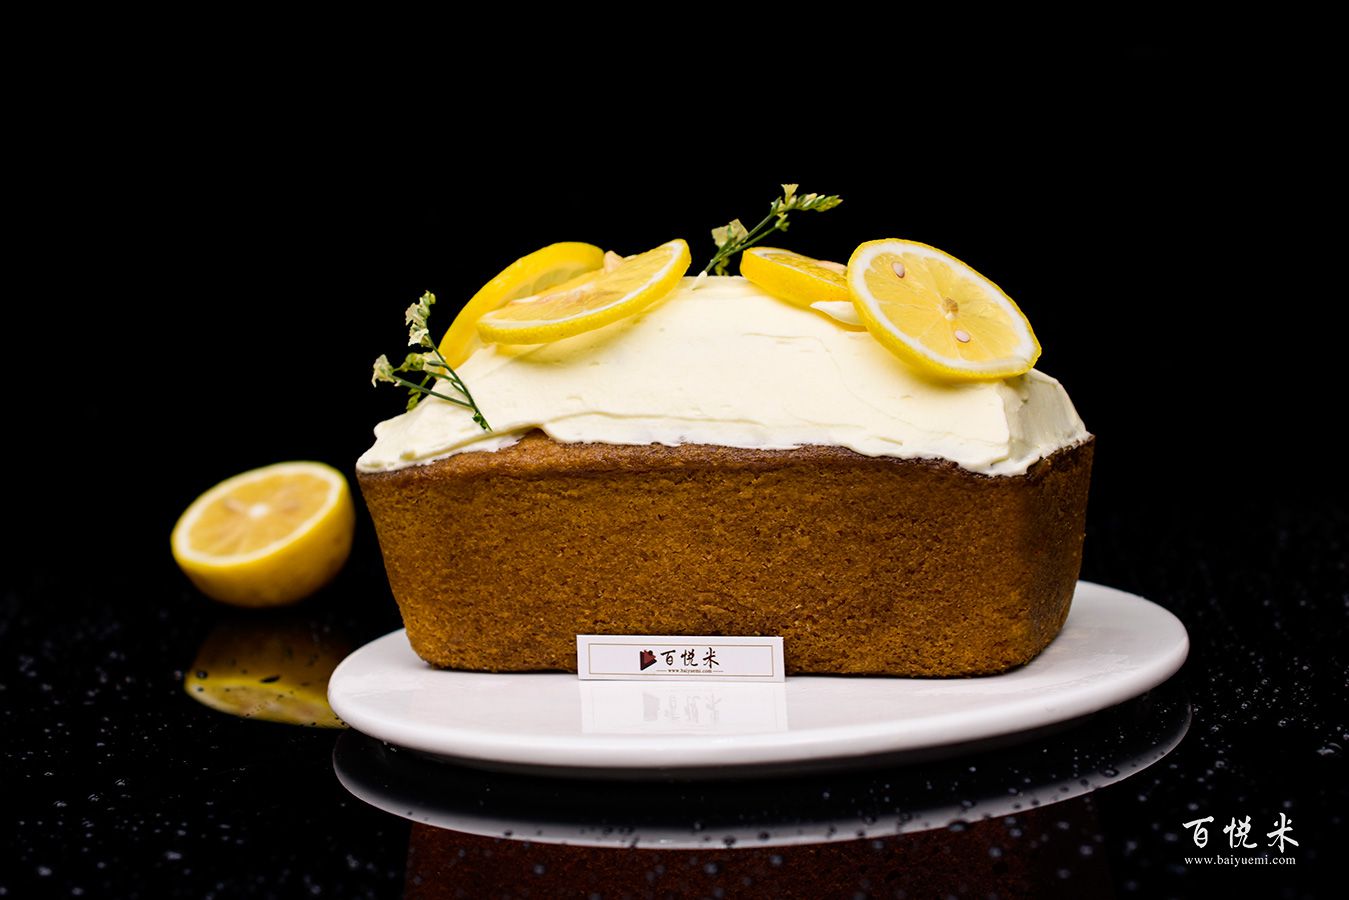 柠檬磅蛋糕怎么做_柠檬磅蛋糕的做法_男姐家_豆果美食